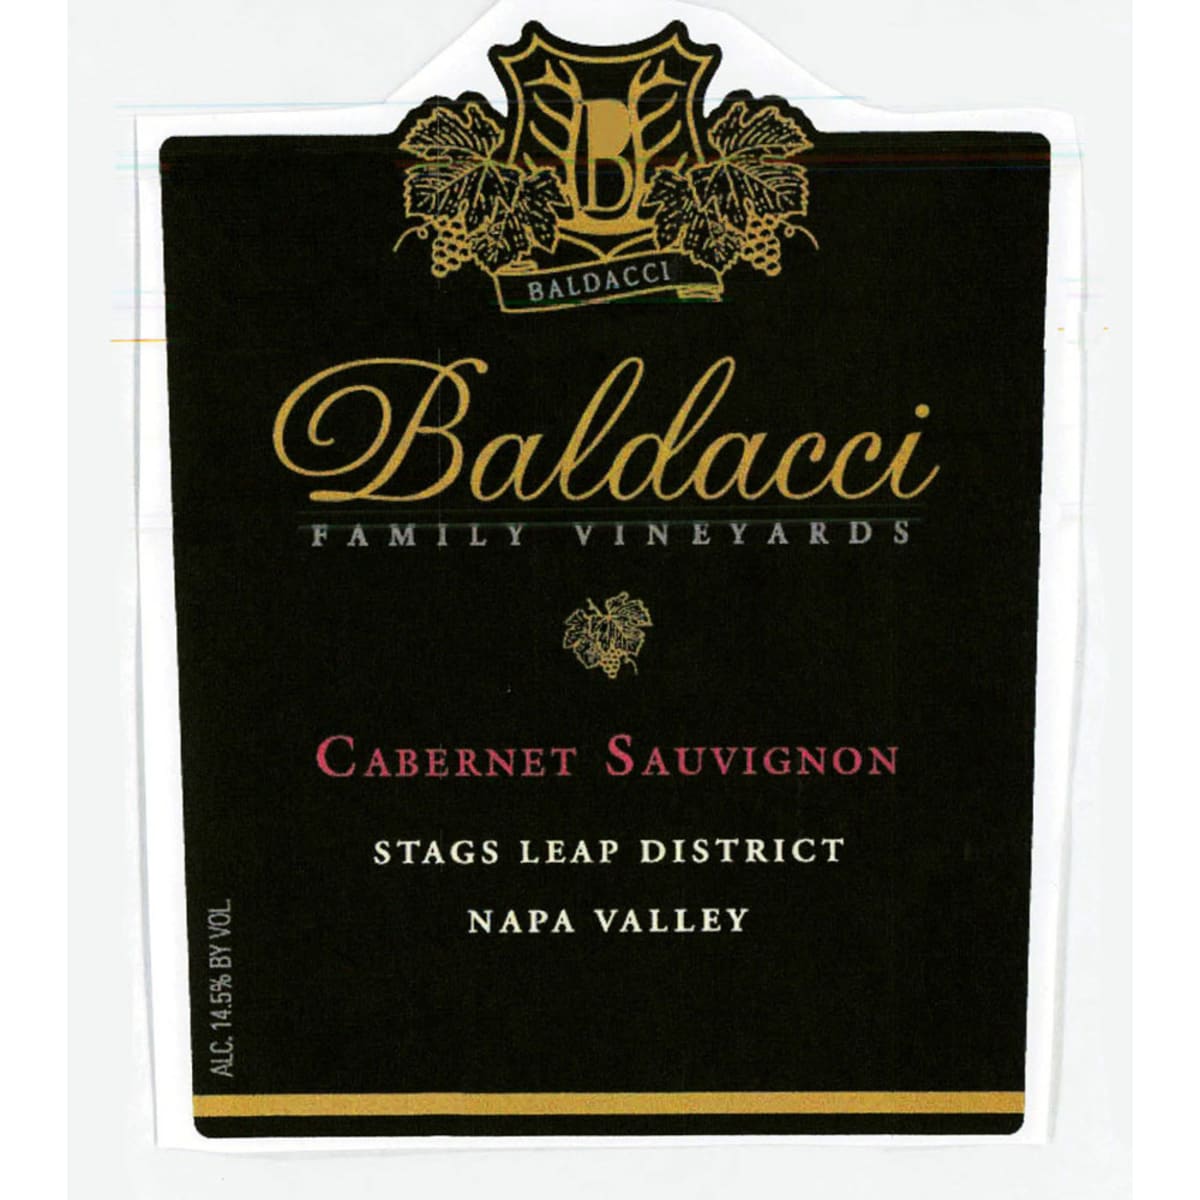 Baldacci Family Vineyards Cabernet Sauvignon Stags Leap District 2006 Front Label